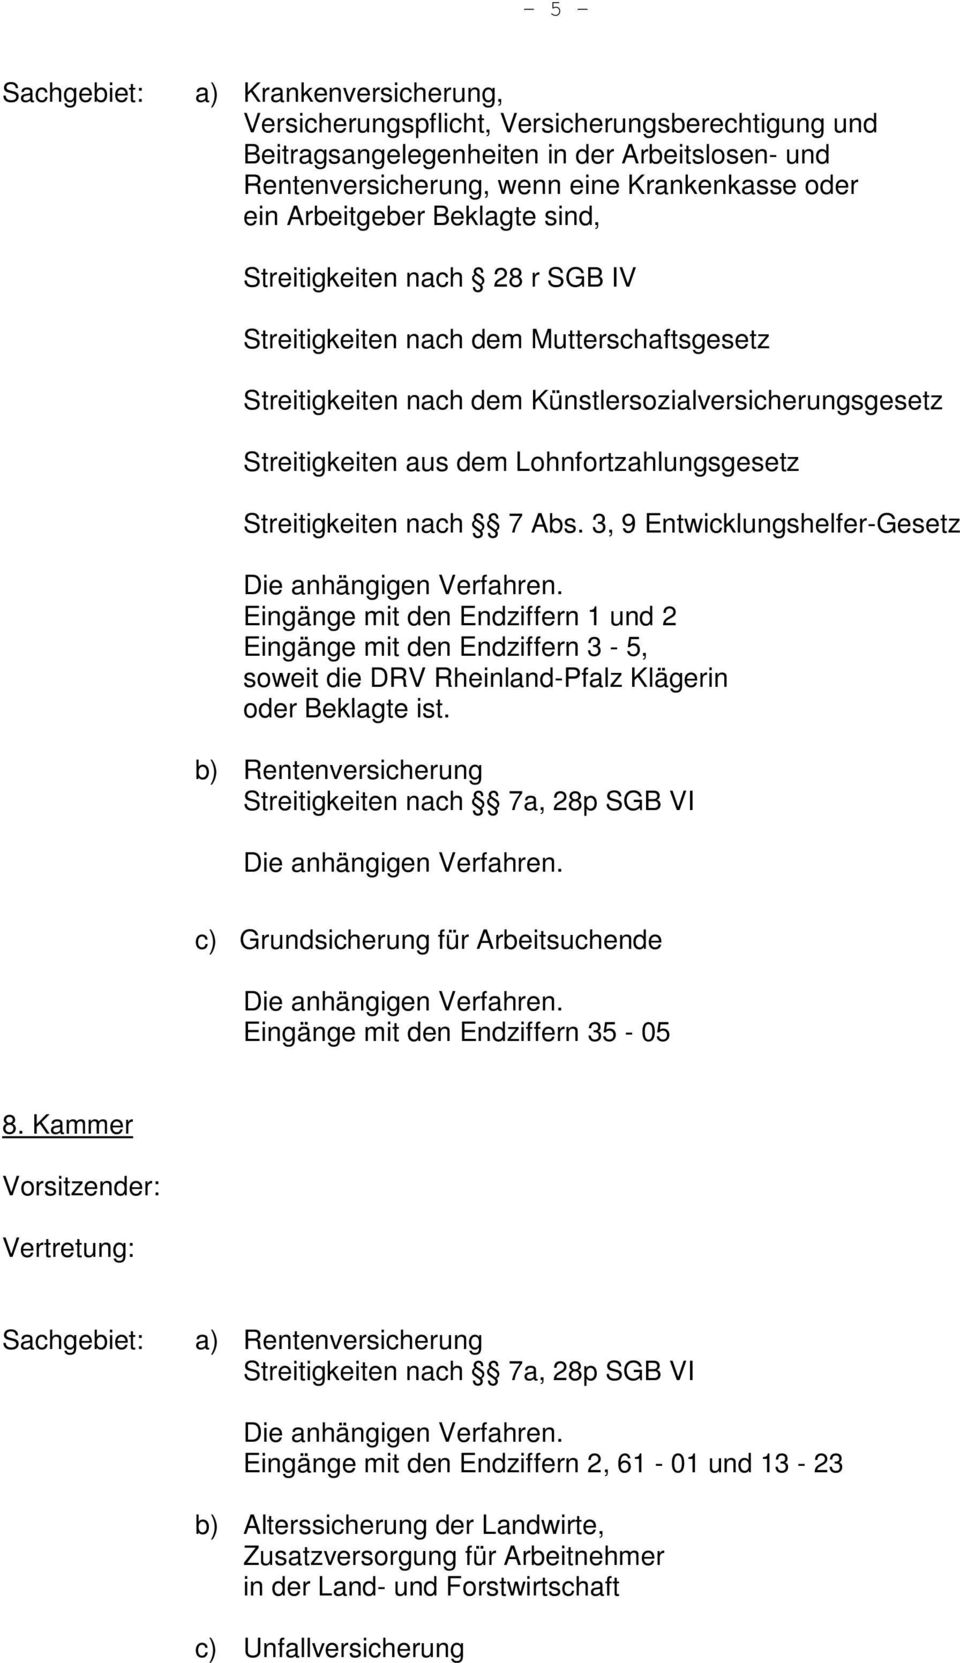 Streitigkeiten nach 7 Abs. 3, 9 Entwicklungshelfer-Gesetz Eingänge mit den Endziffern 1 und 2 Eingänge mit den Endziffern 3-5, soweit die DRV Rheinland-Pfalz Klägerin oder Beklagte ist.